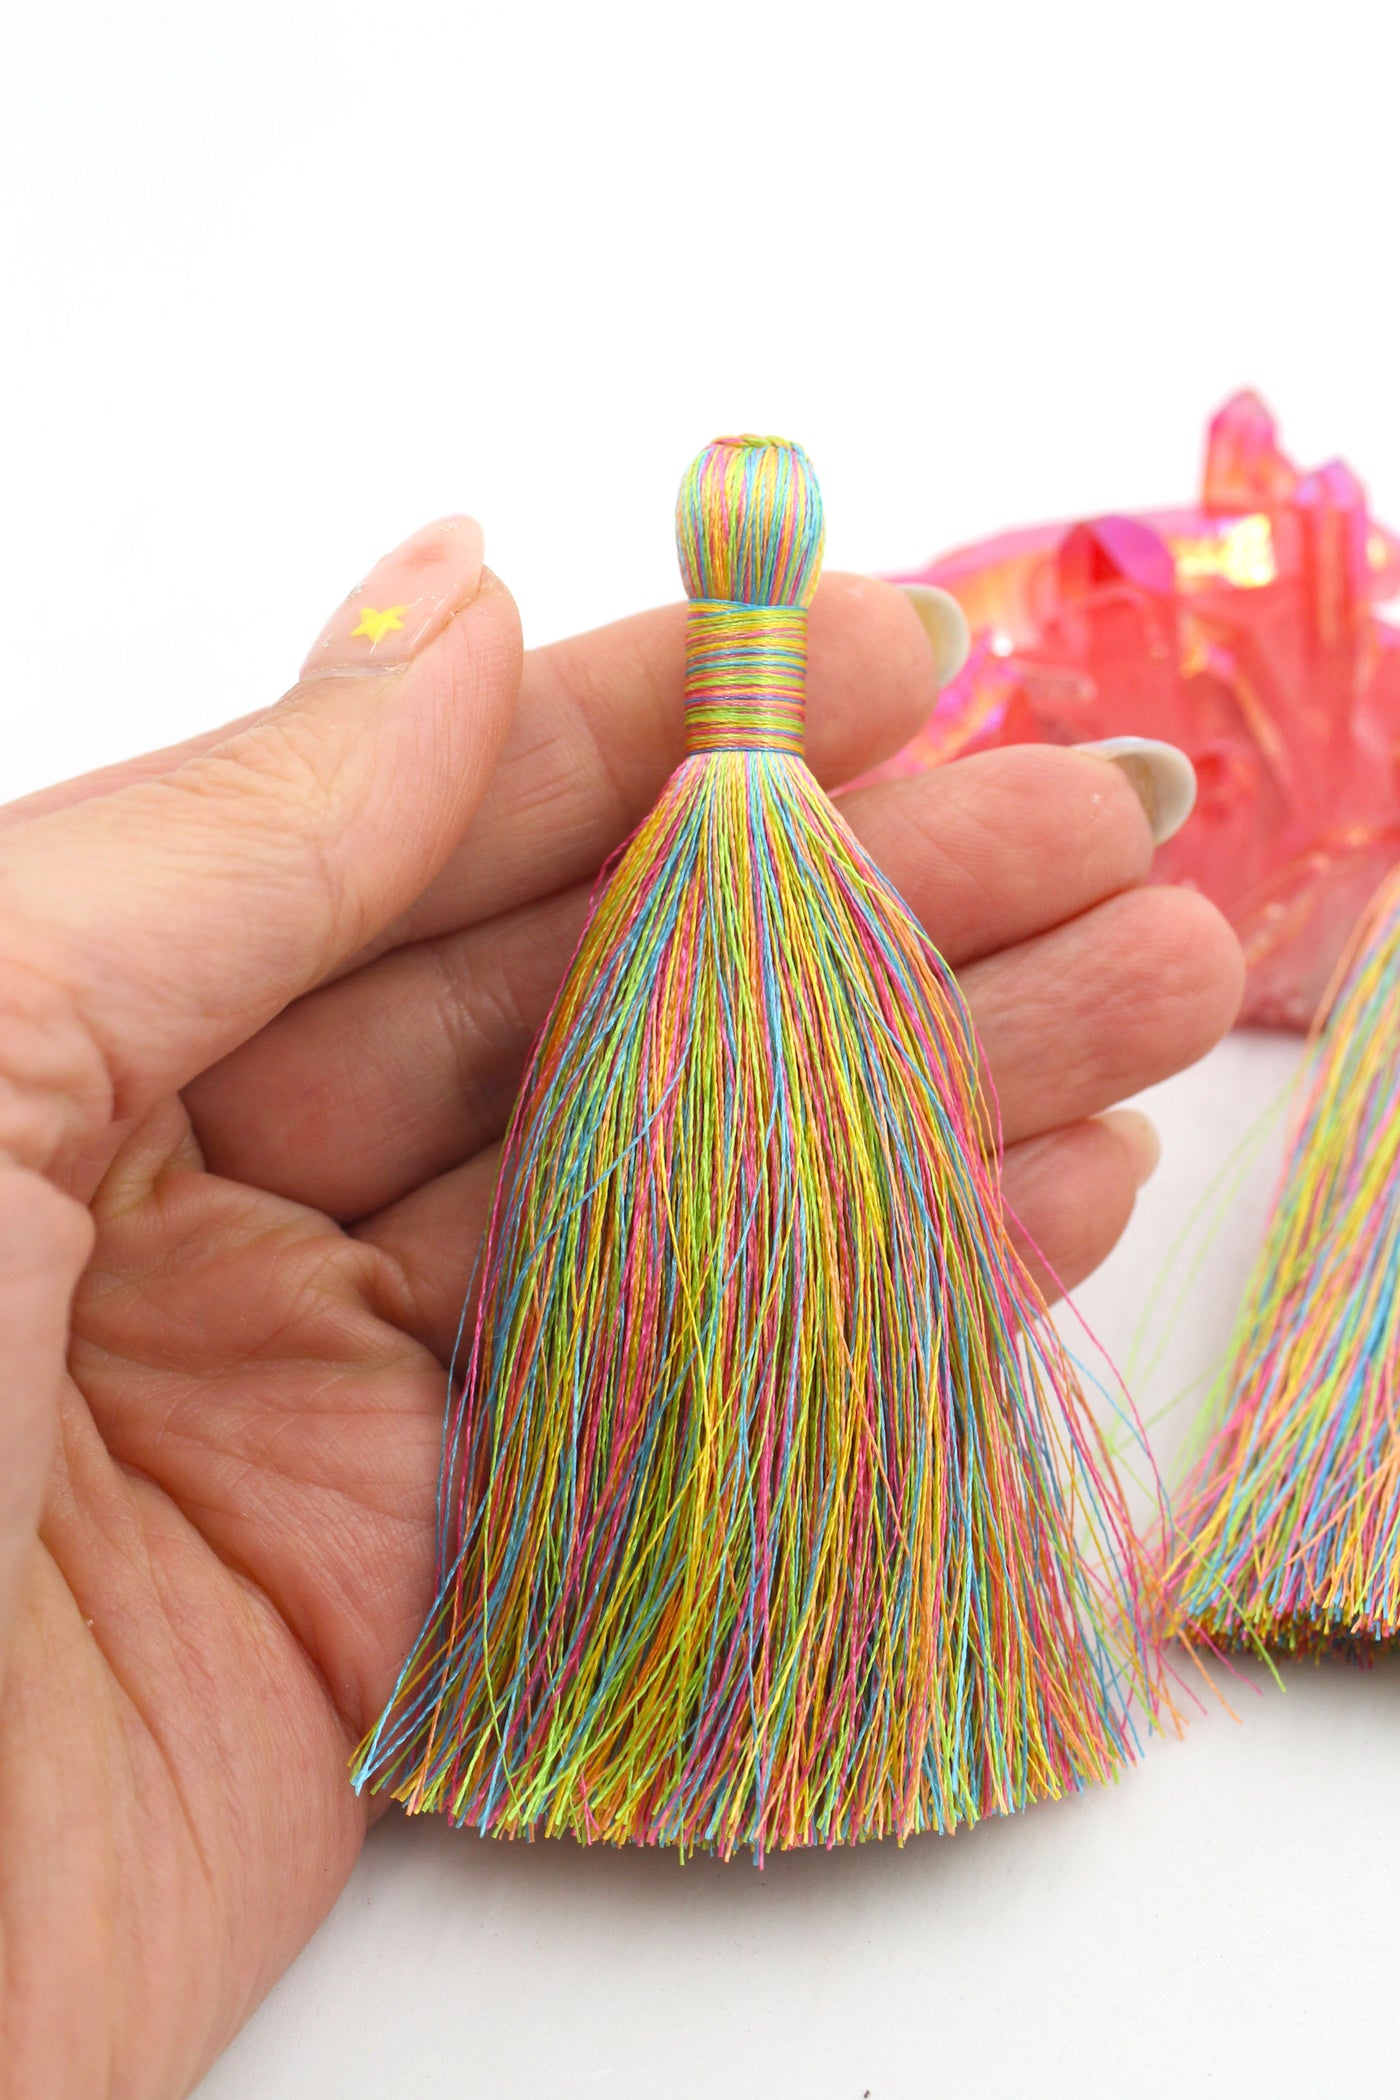 Unicorn's Tail Tassels, 3.5" Silky Luxe Fringe Pendant, Pastel Rainbow